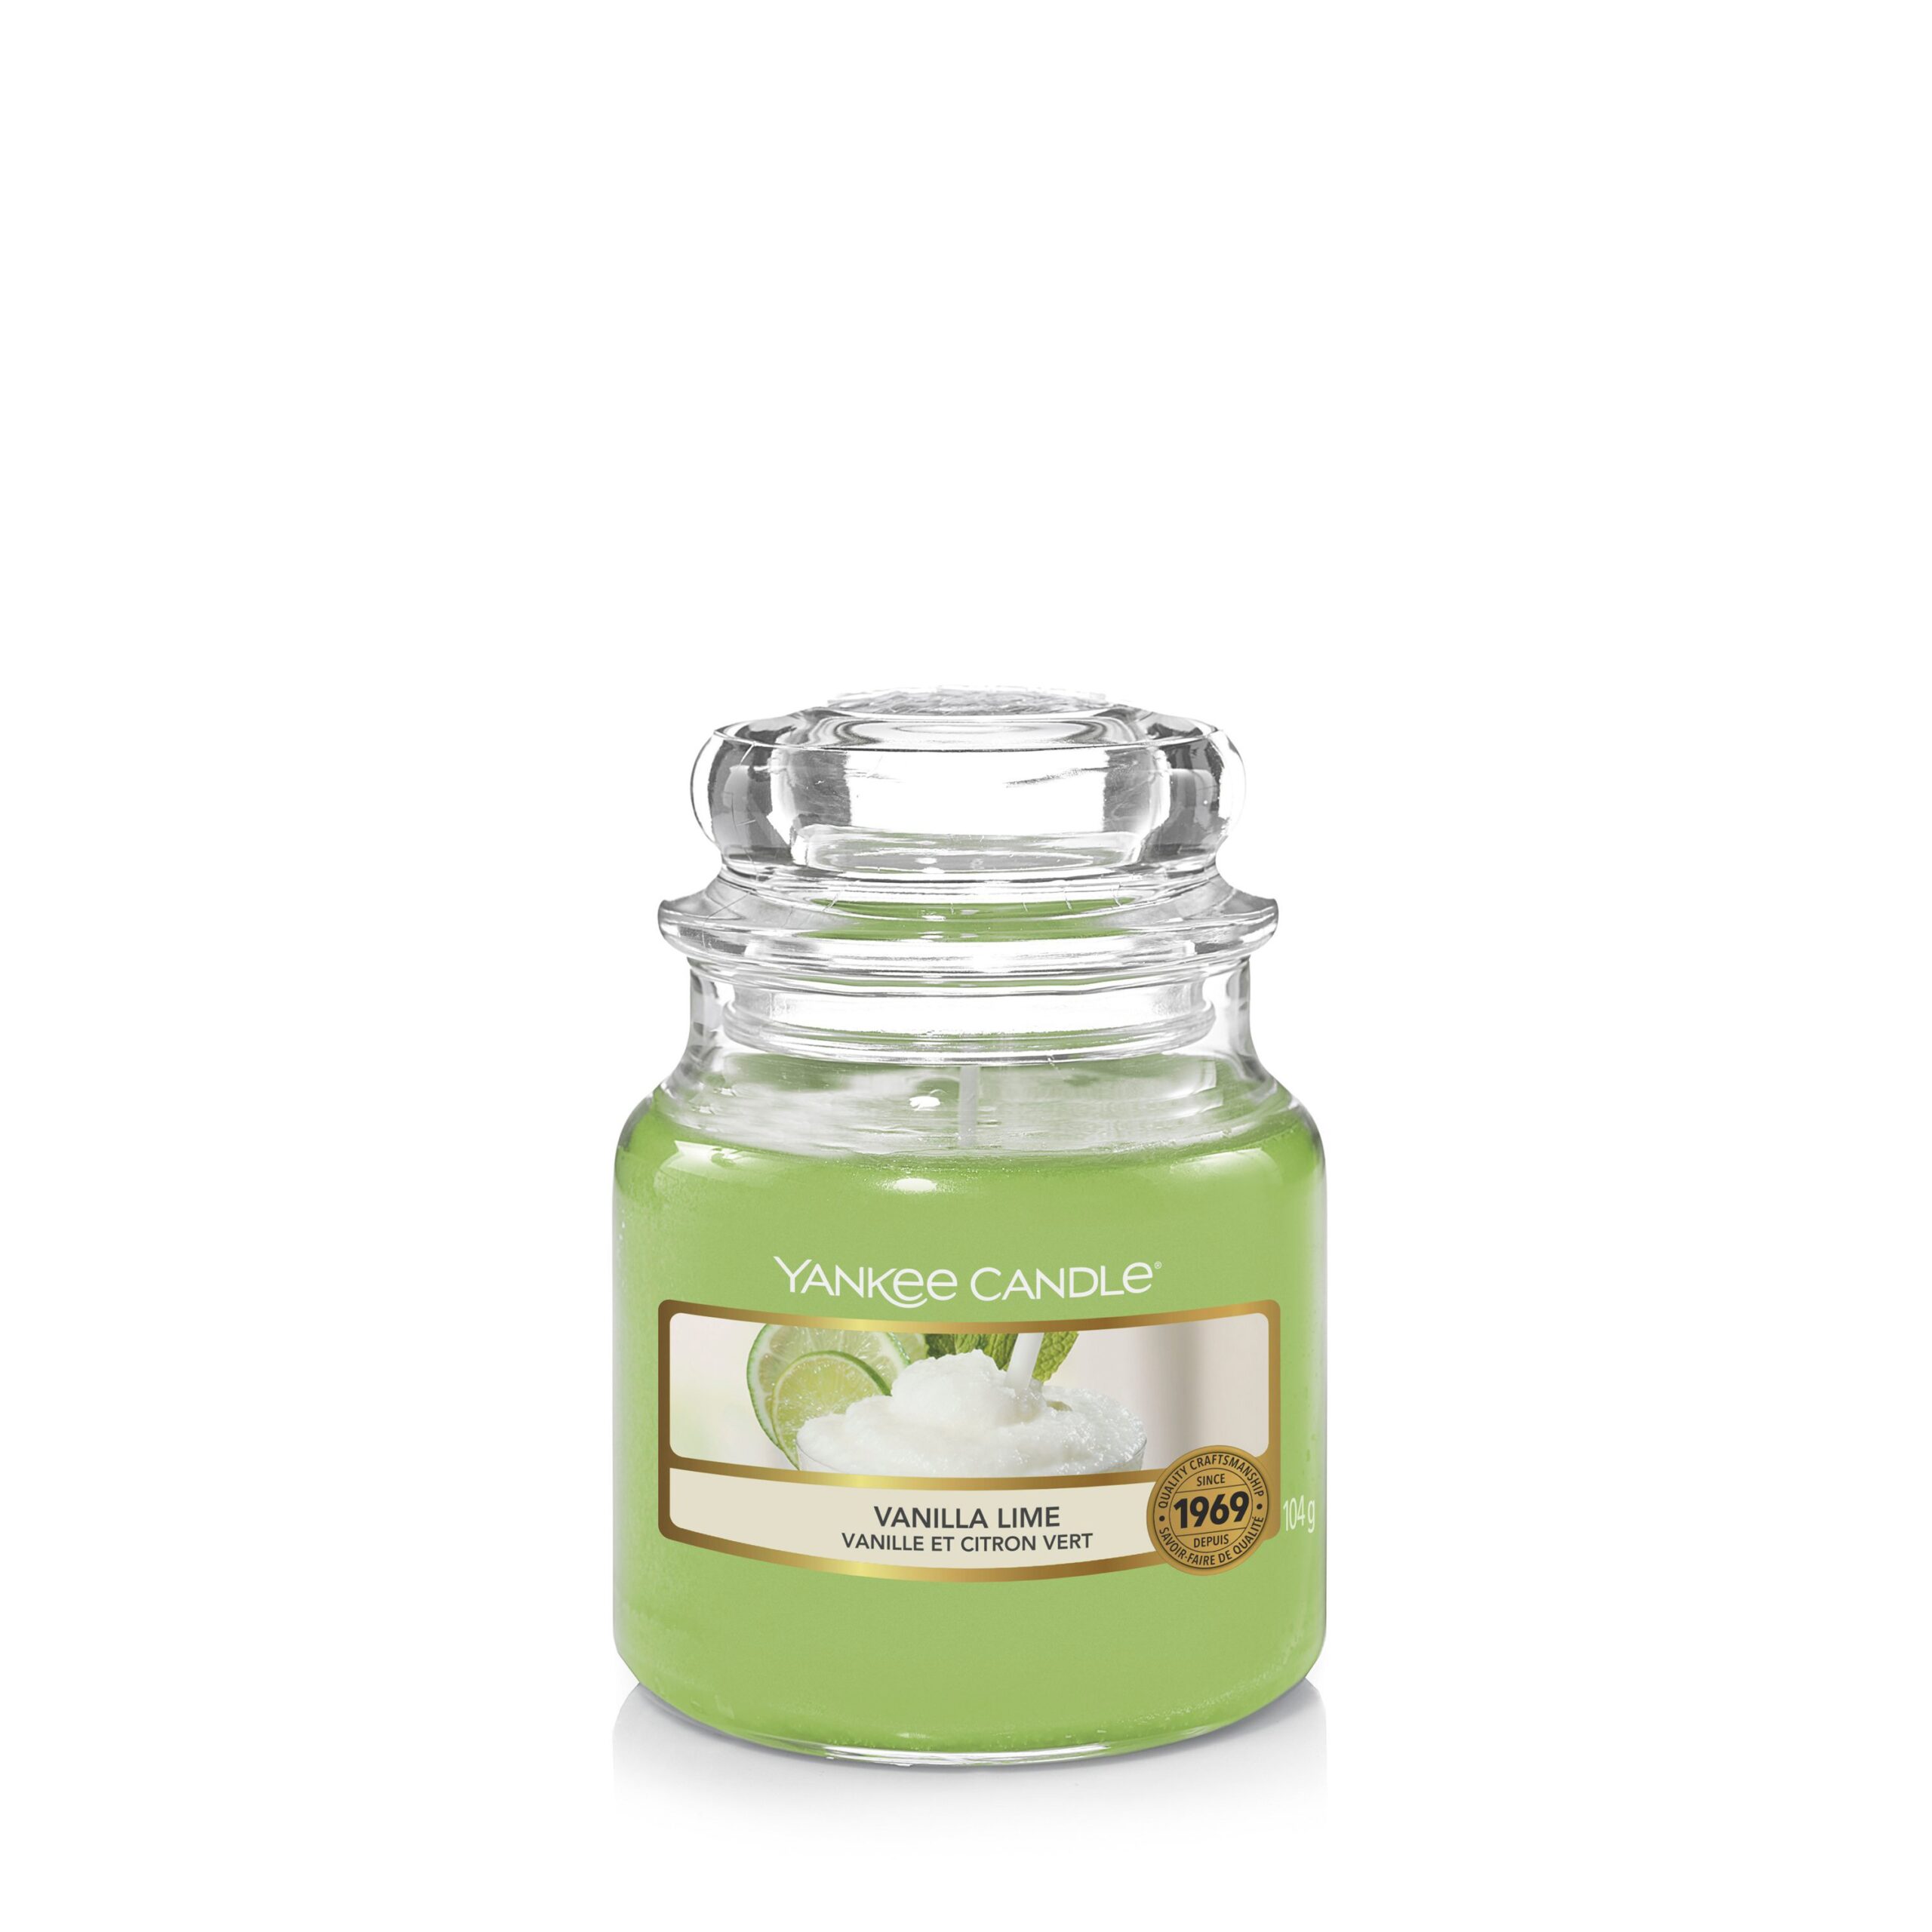 Candela Profumata Yankee Candle Vanilla Lime - Idea Fiori